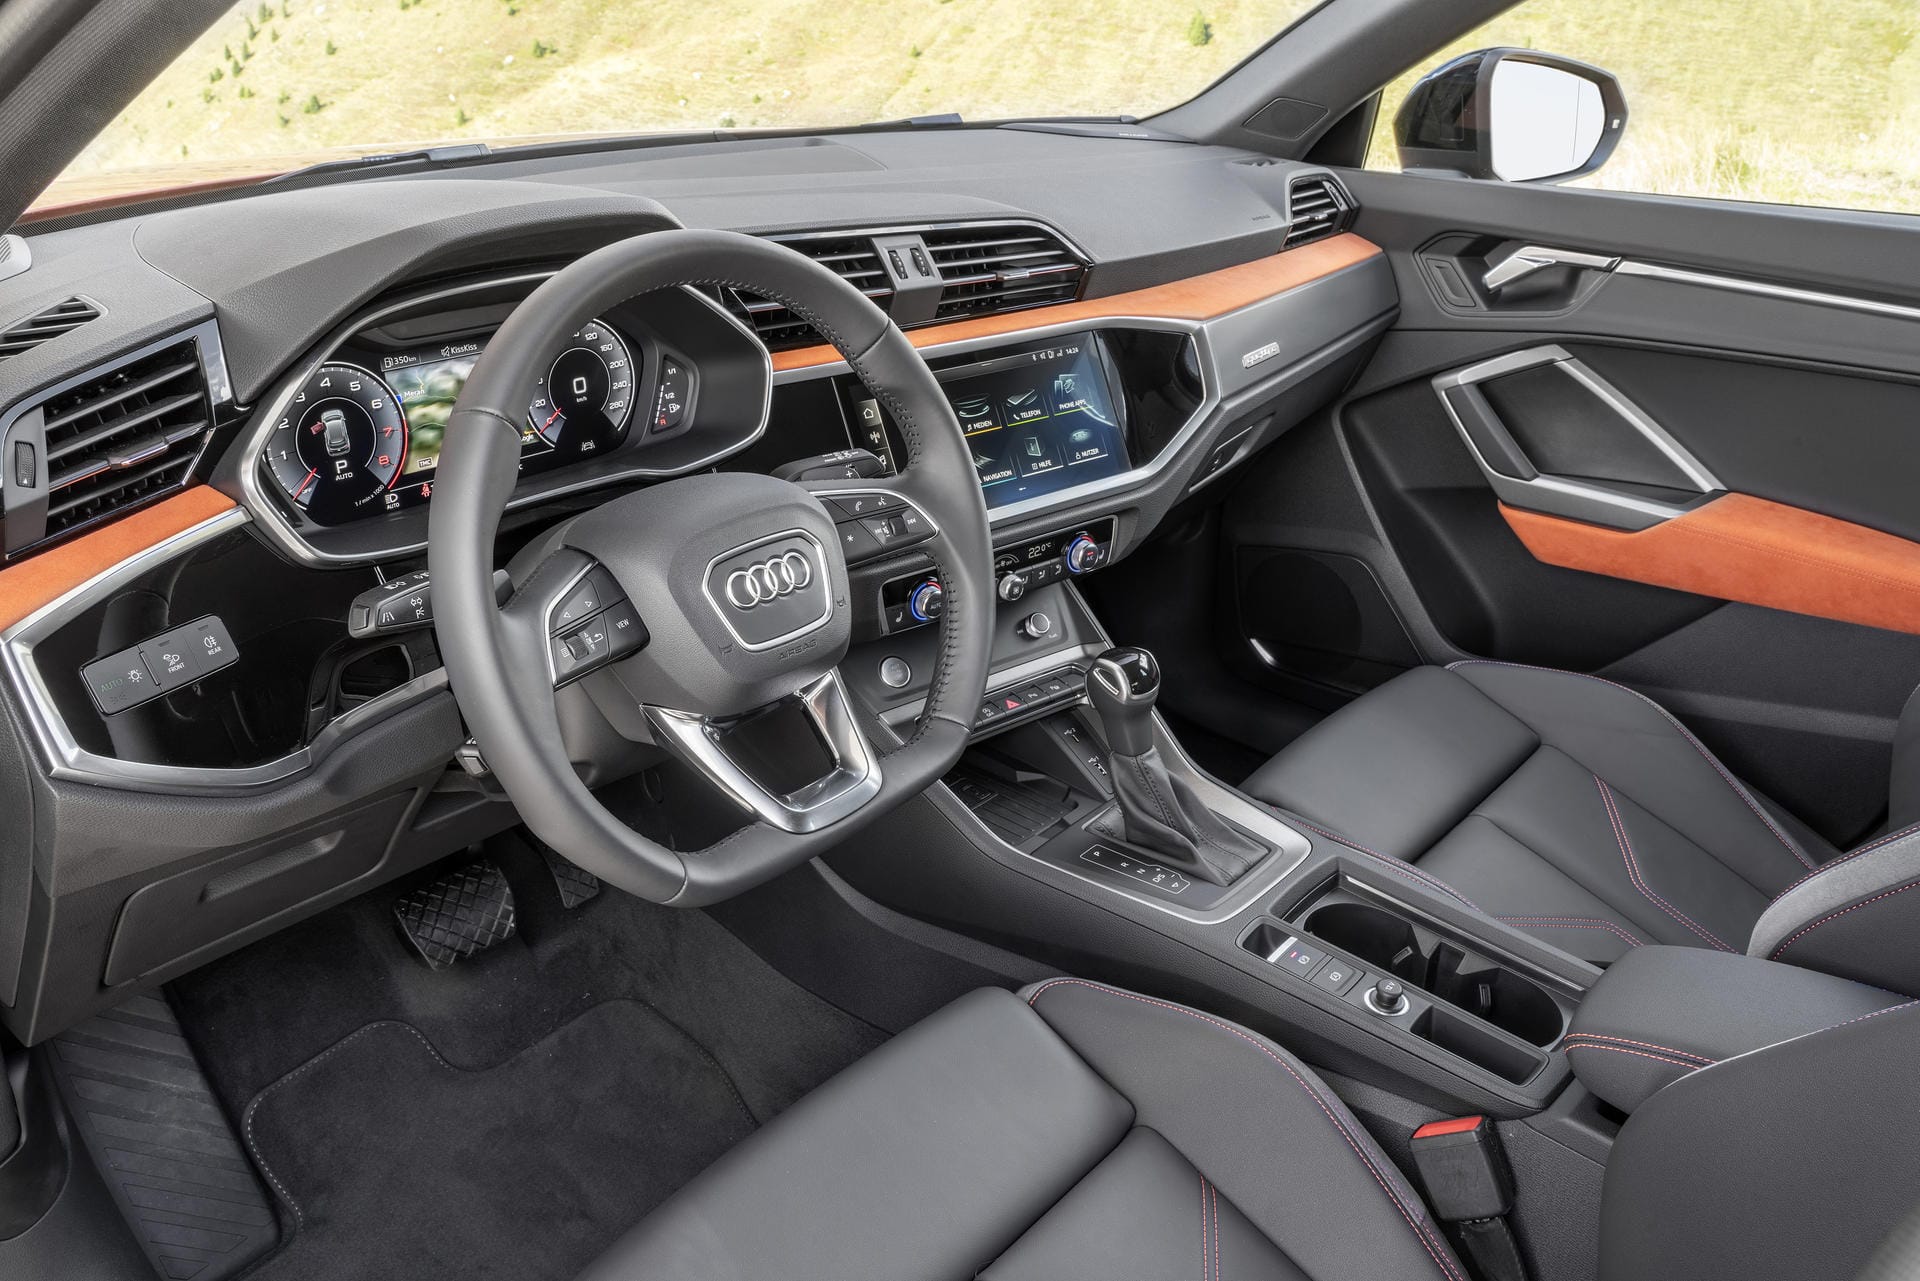 Der Innenraum: Das Cockpit übernimmt die Displays der großen Audi-Limousinen.